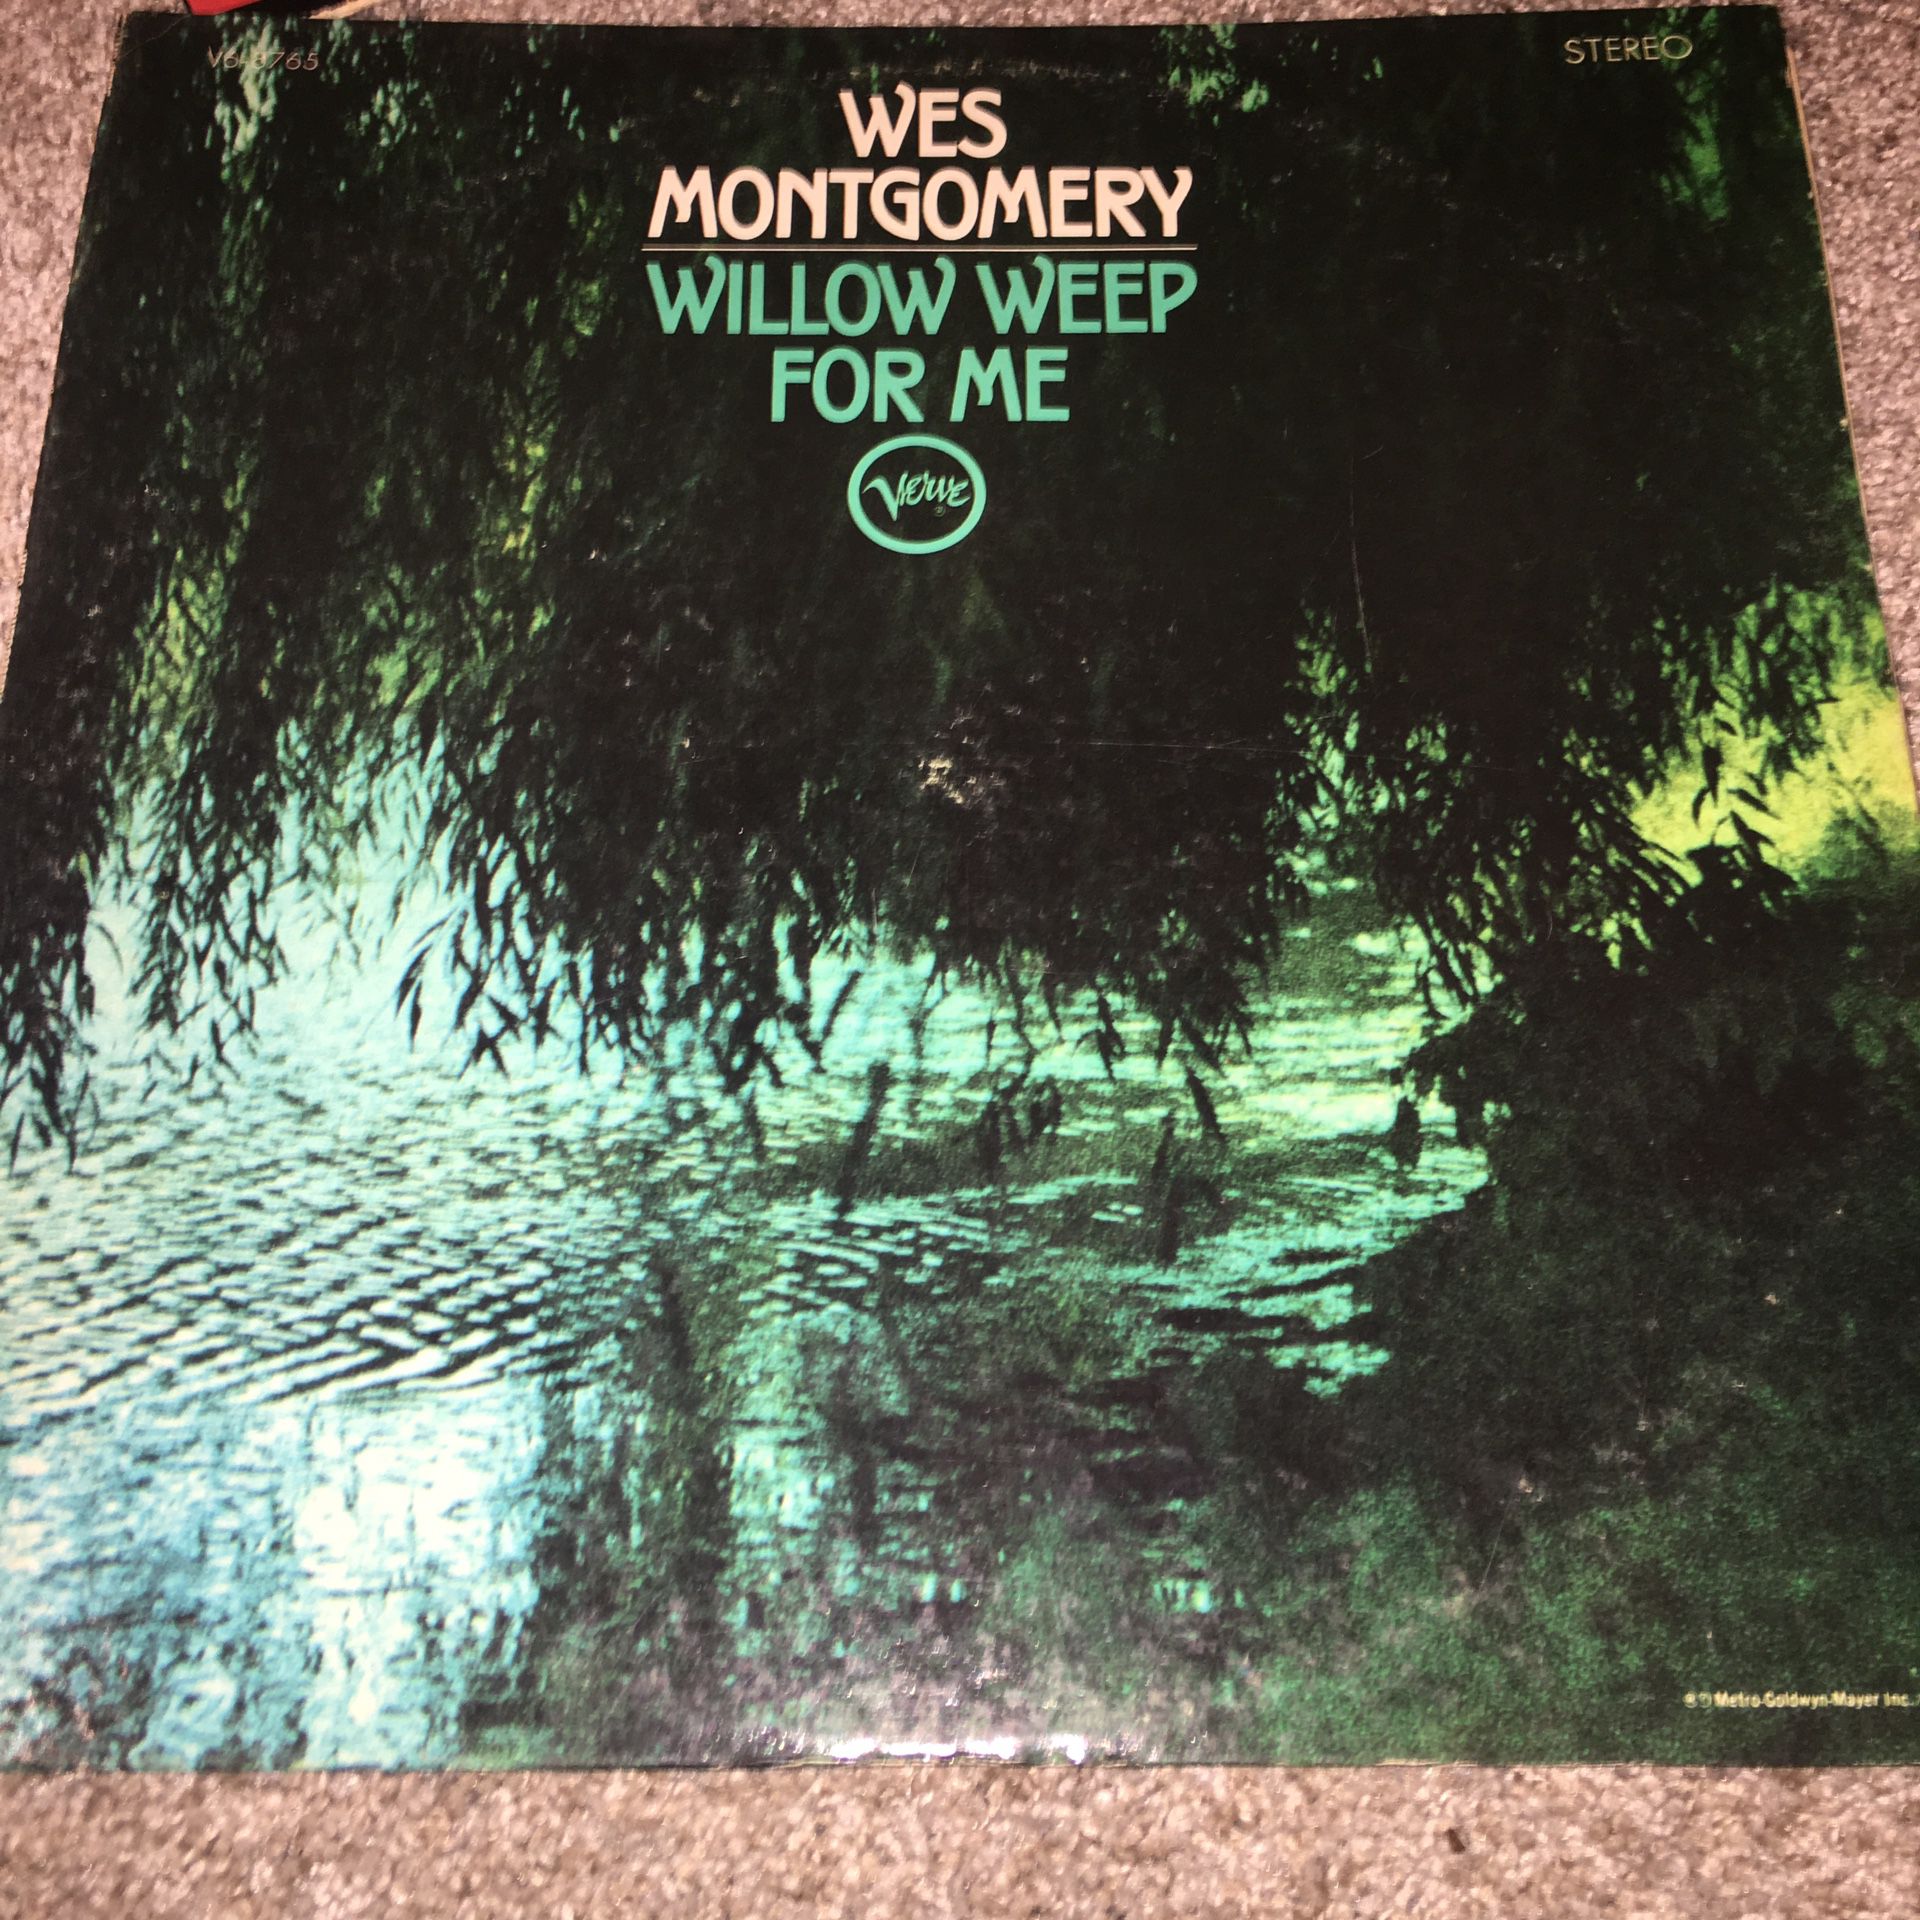 Vinyl Record Wes Montgomery